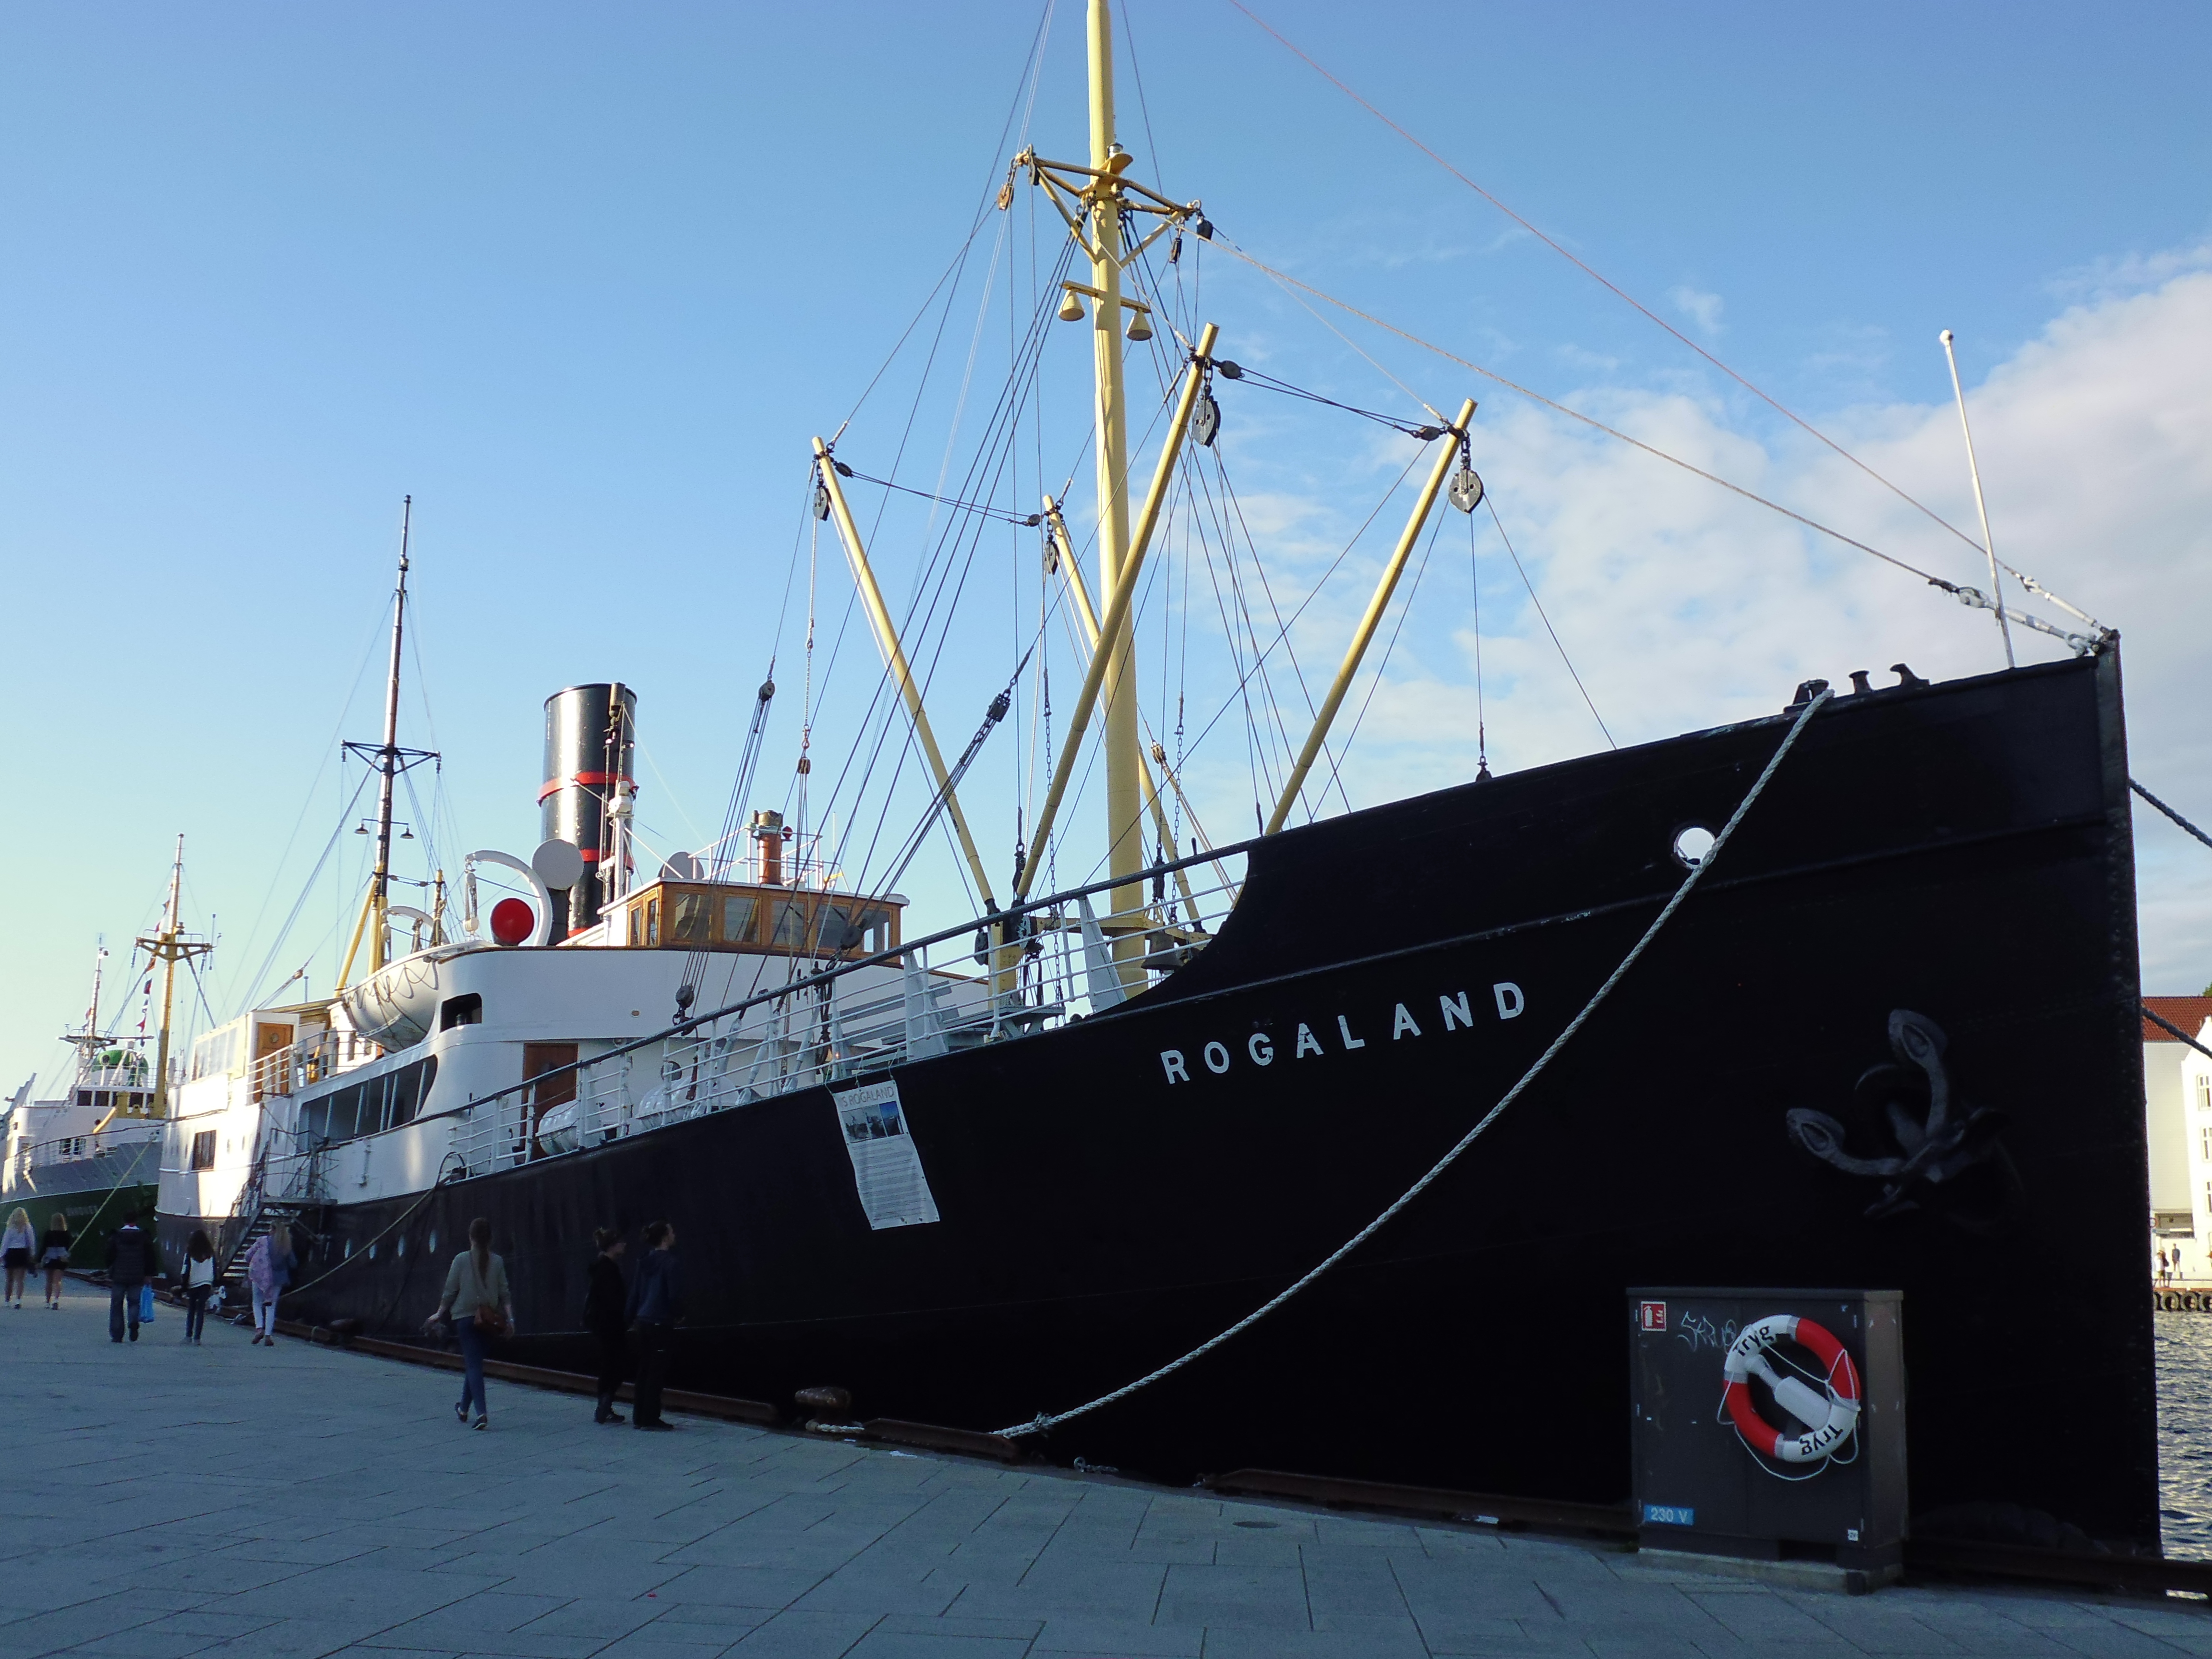 Rogaland en el puerto de Stavanger (@mibaulviajero)